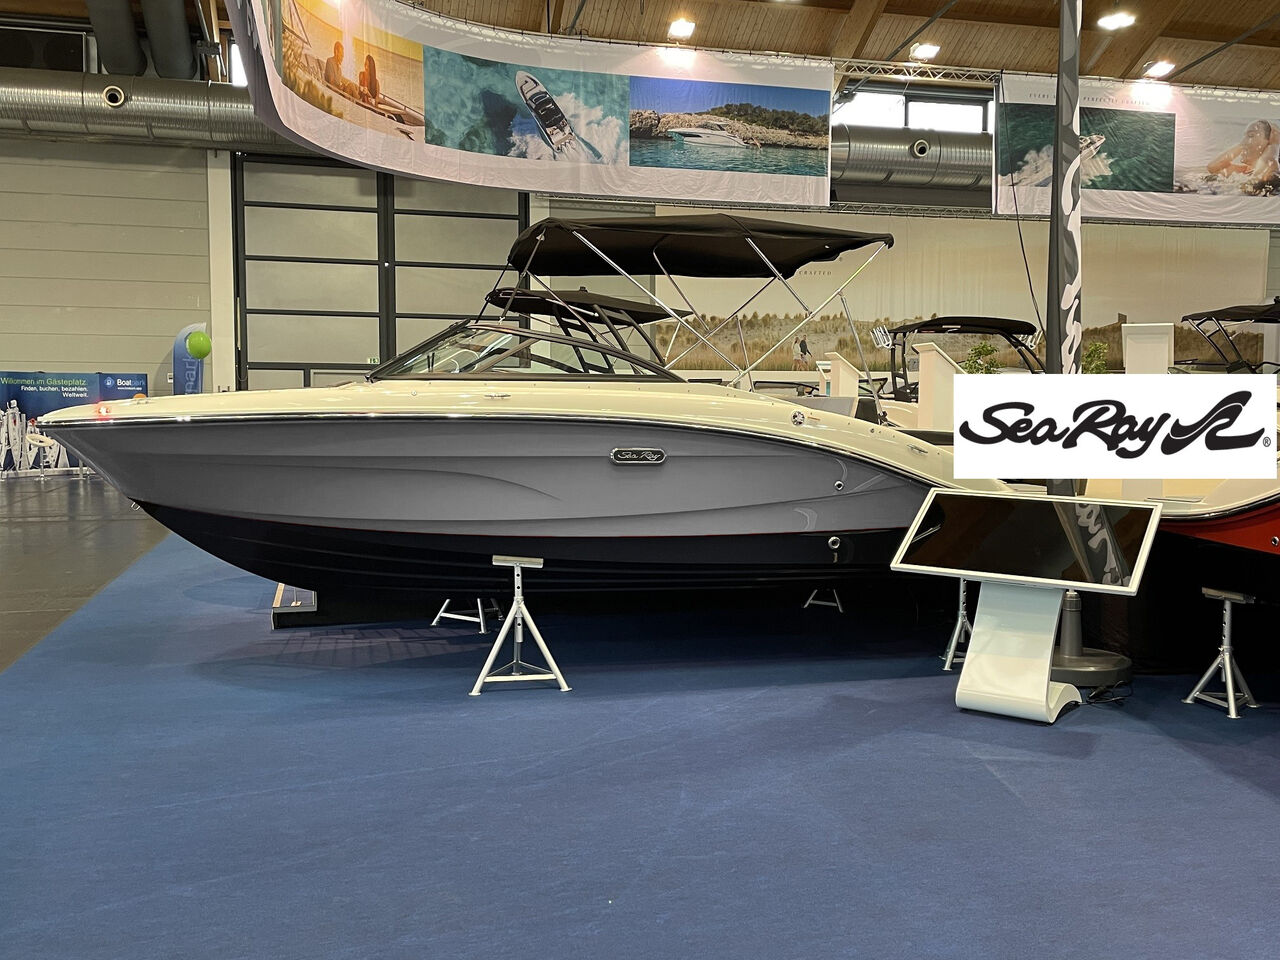 Sea Ray 190 SPXE - neues Modell!